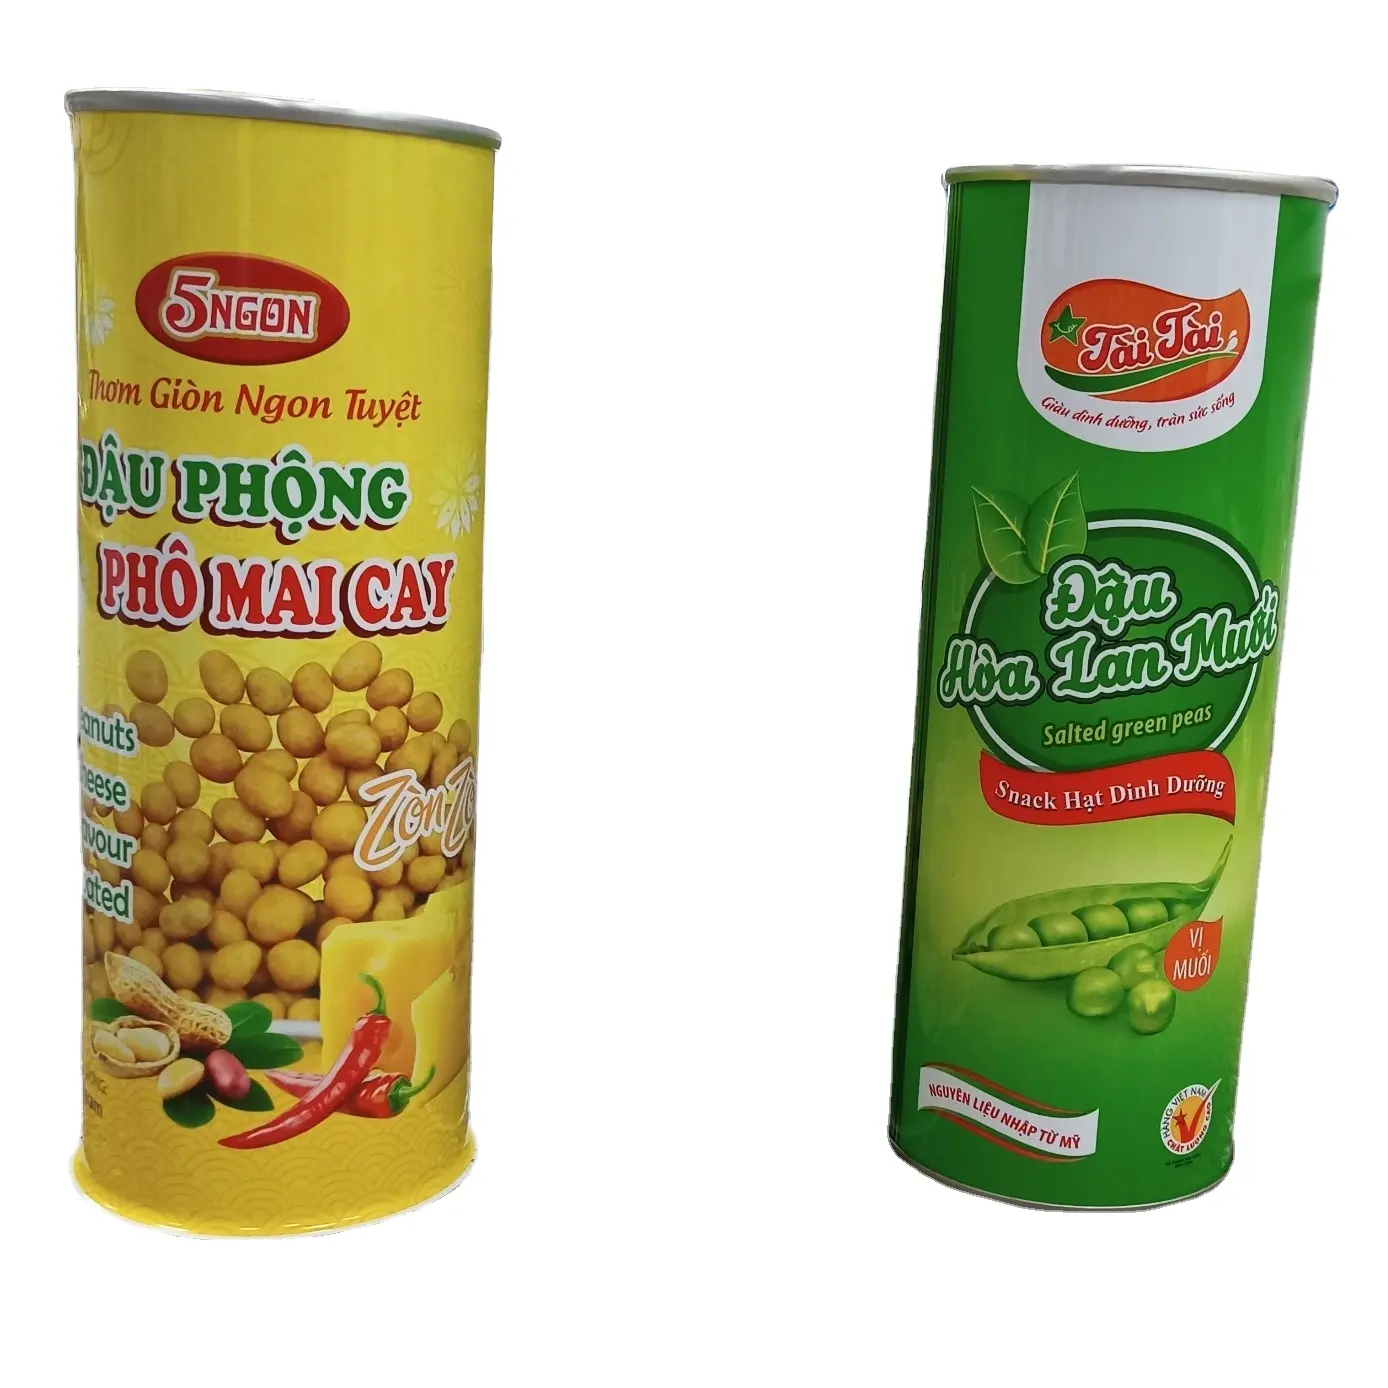 Бесплатный образец 4-6 цветов, металлическая упаковка, пустые консервированные банки с фруктами, сделанные во Вьетнаме